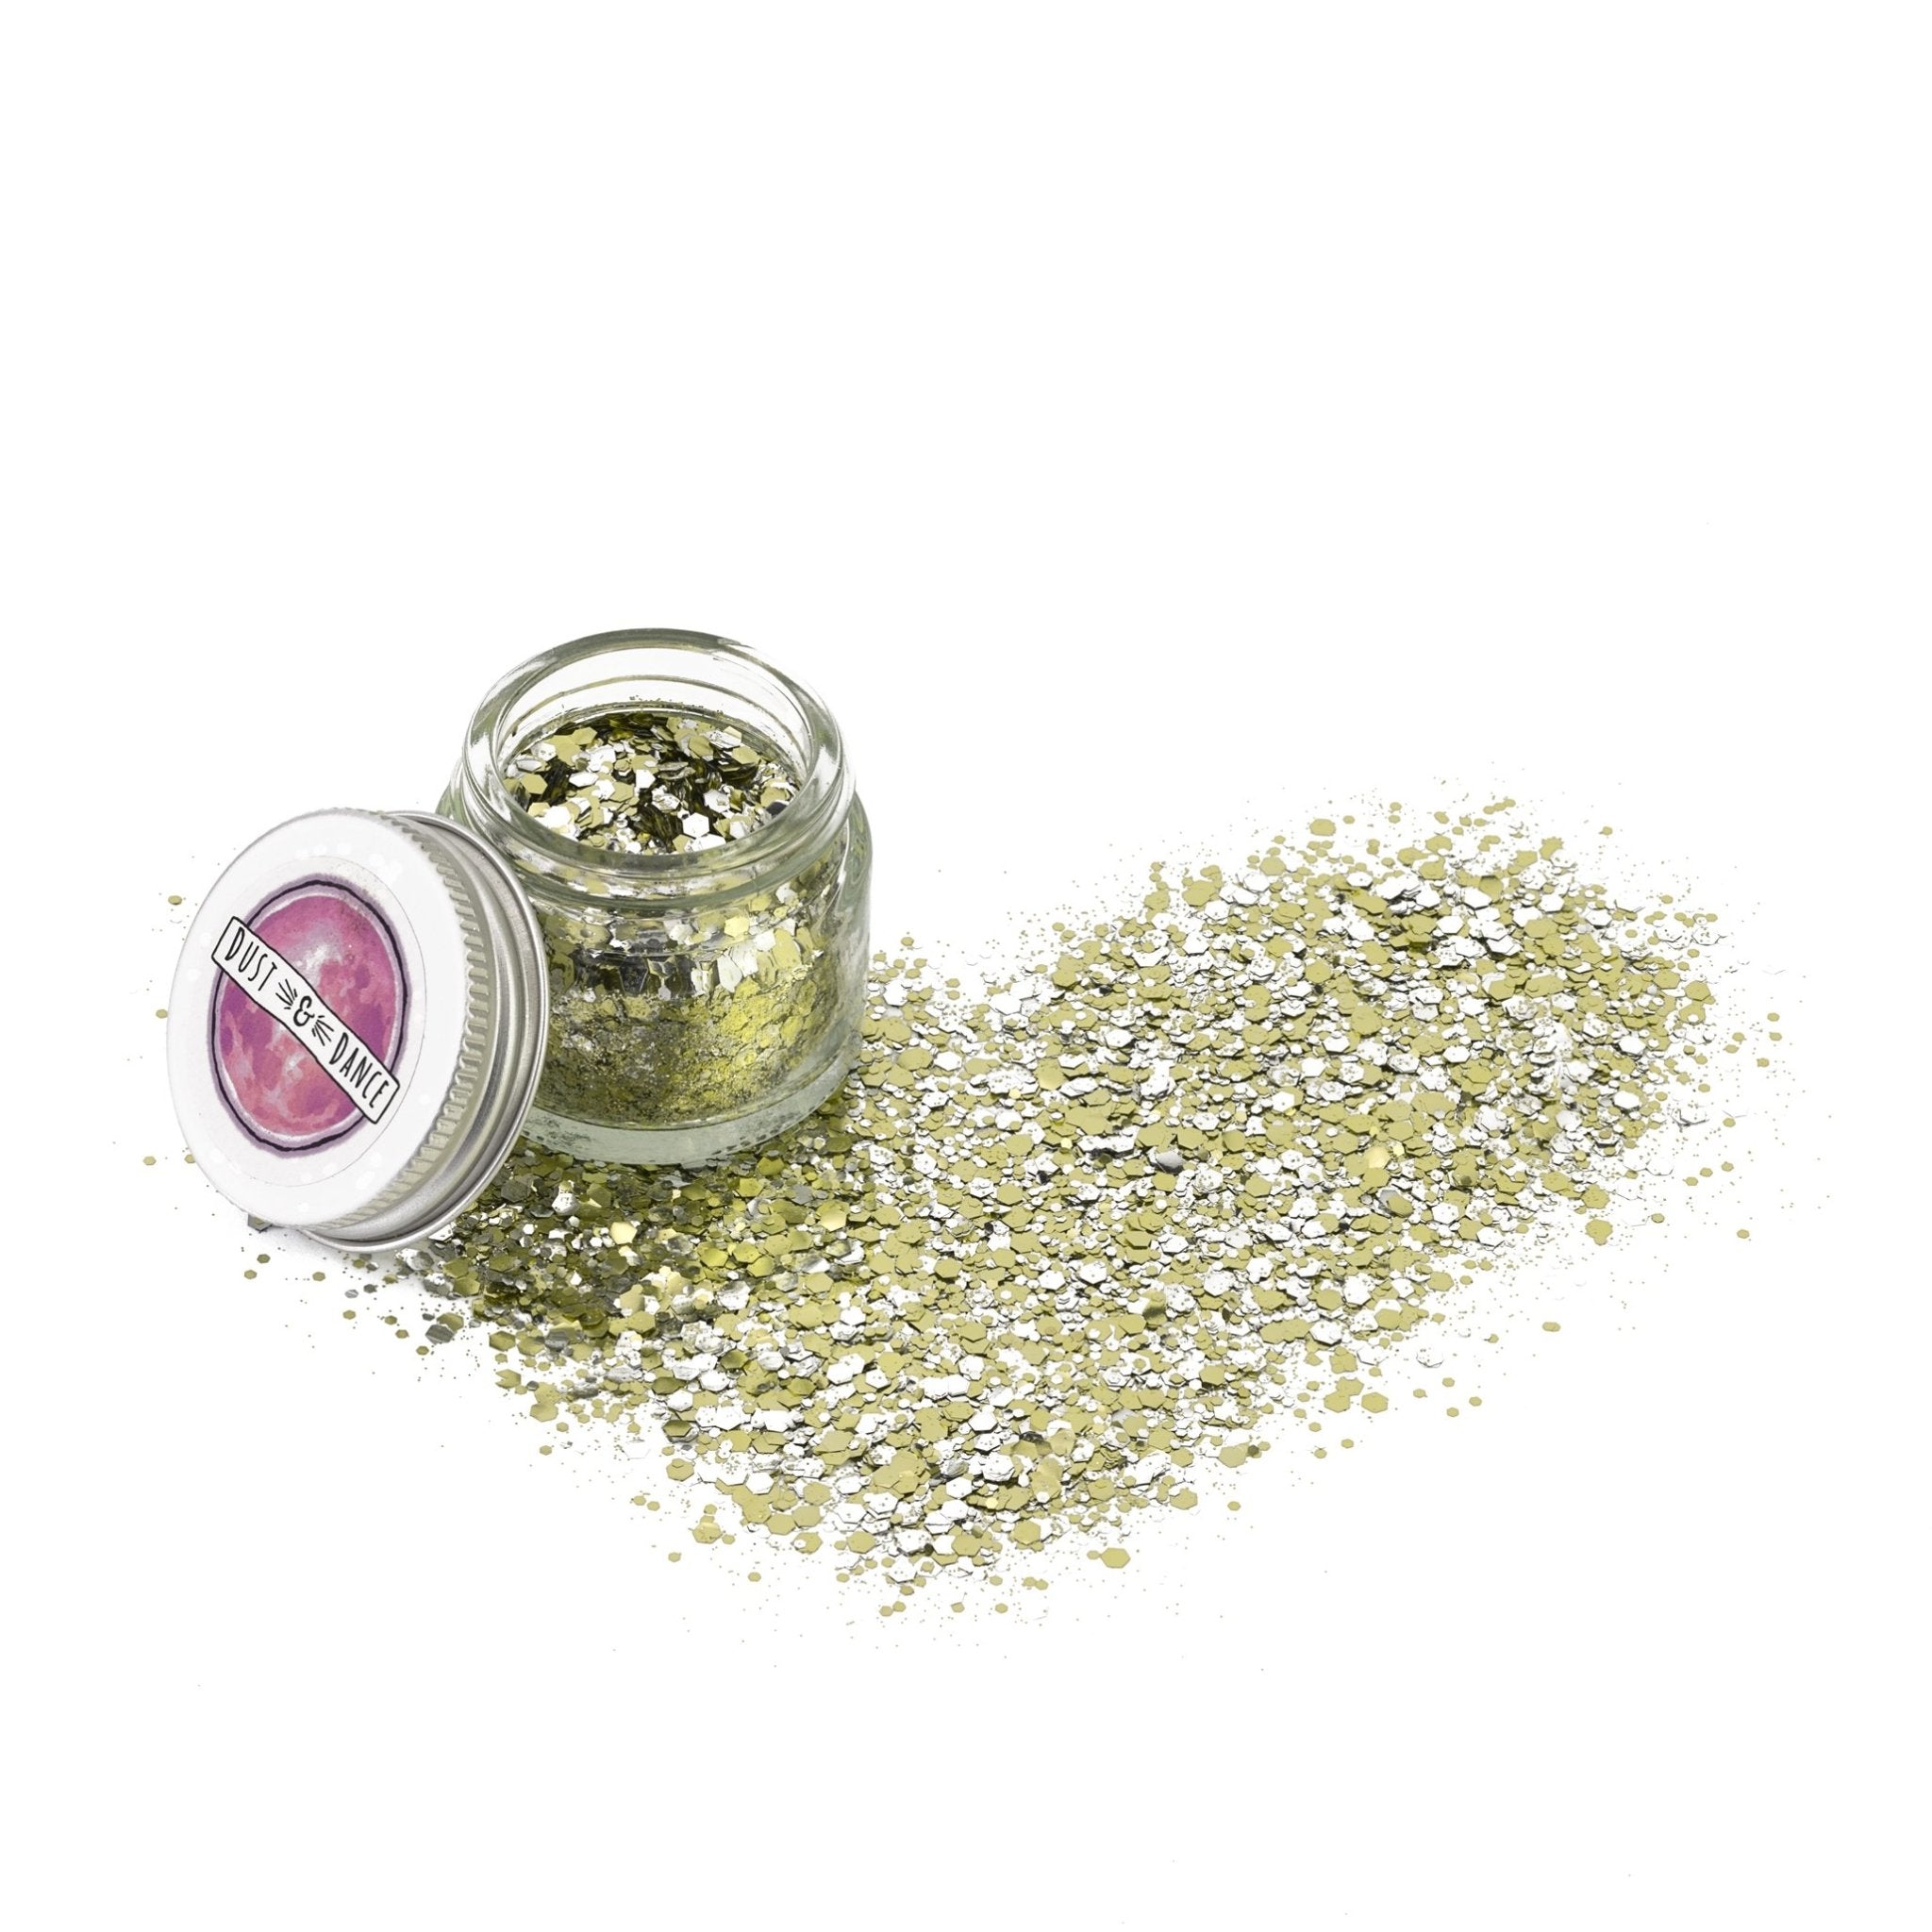 Silver biodegradable glitter - Accessories